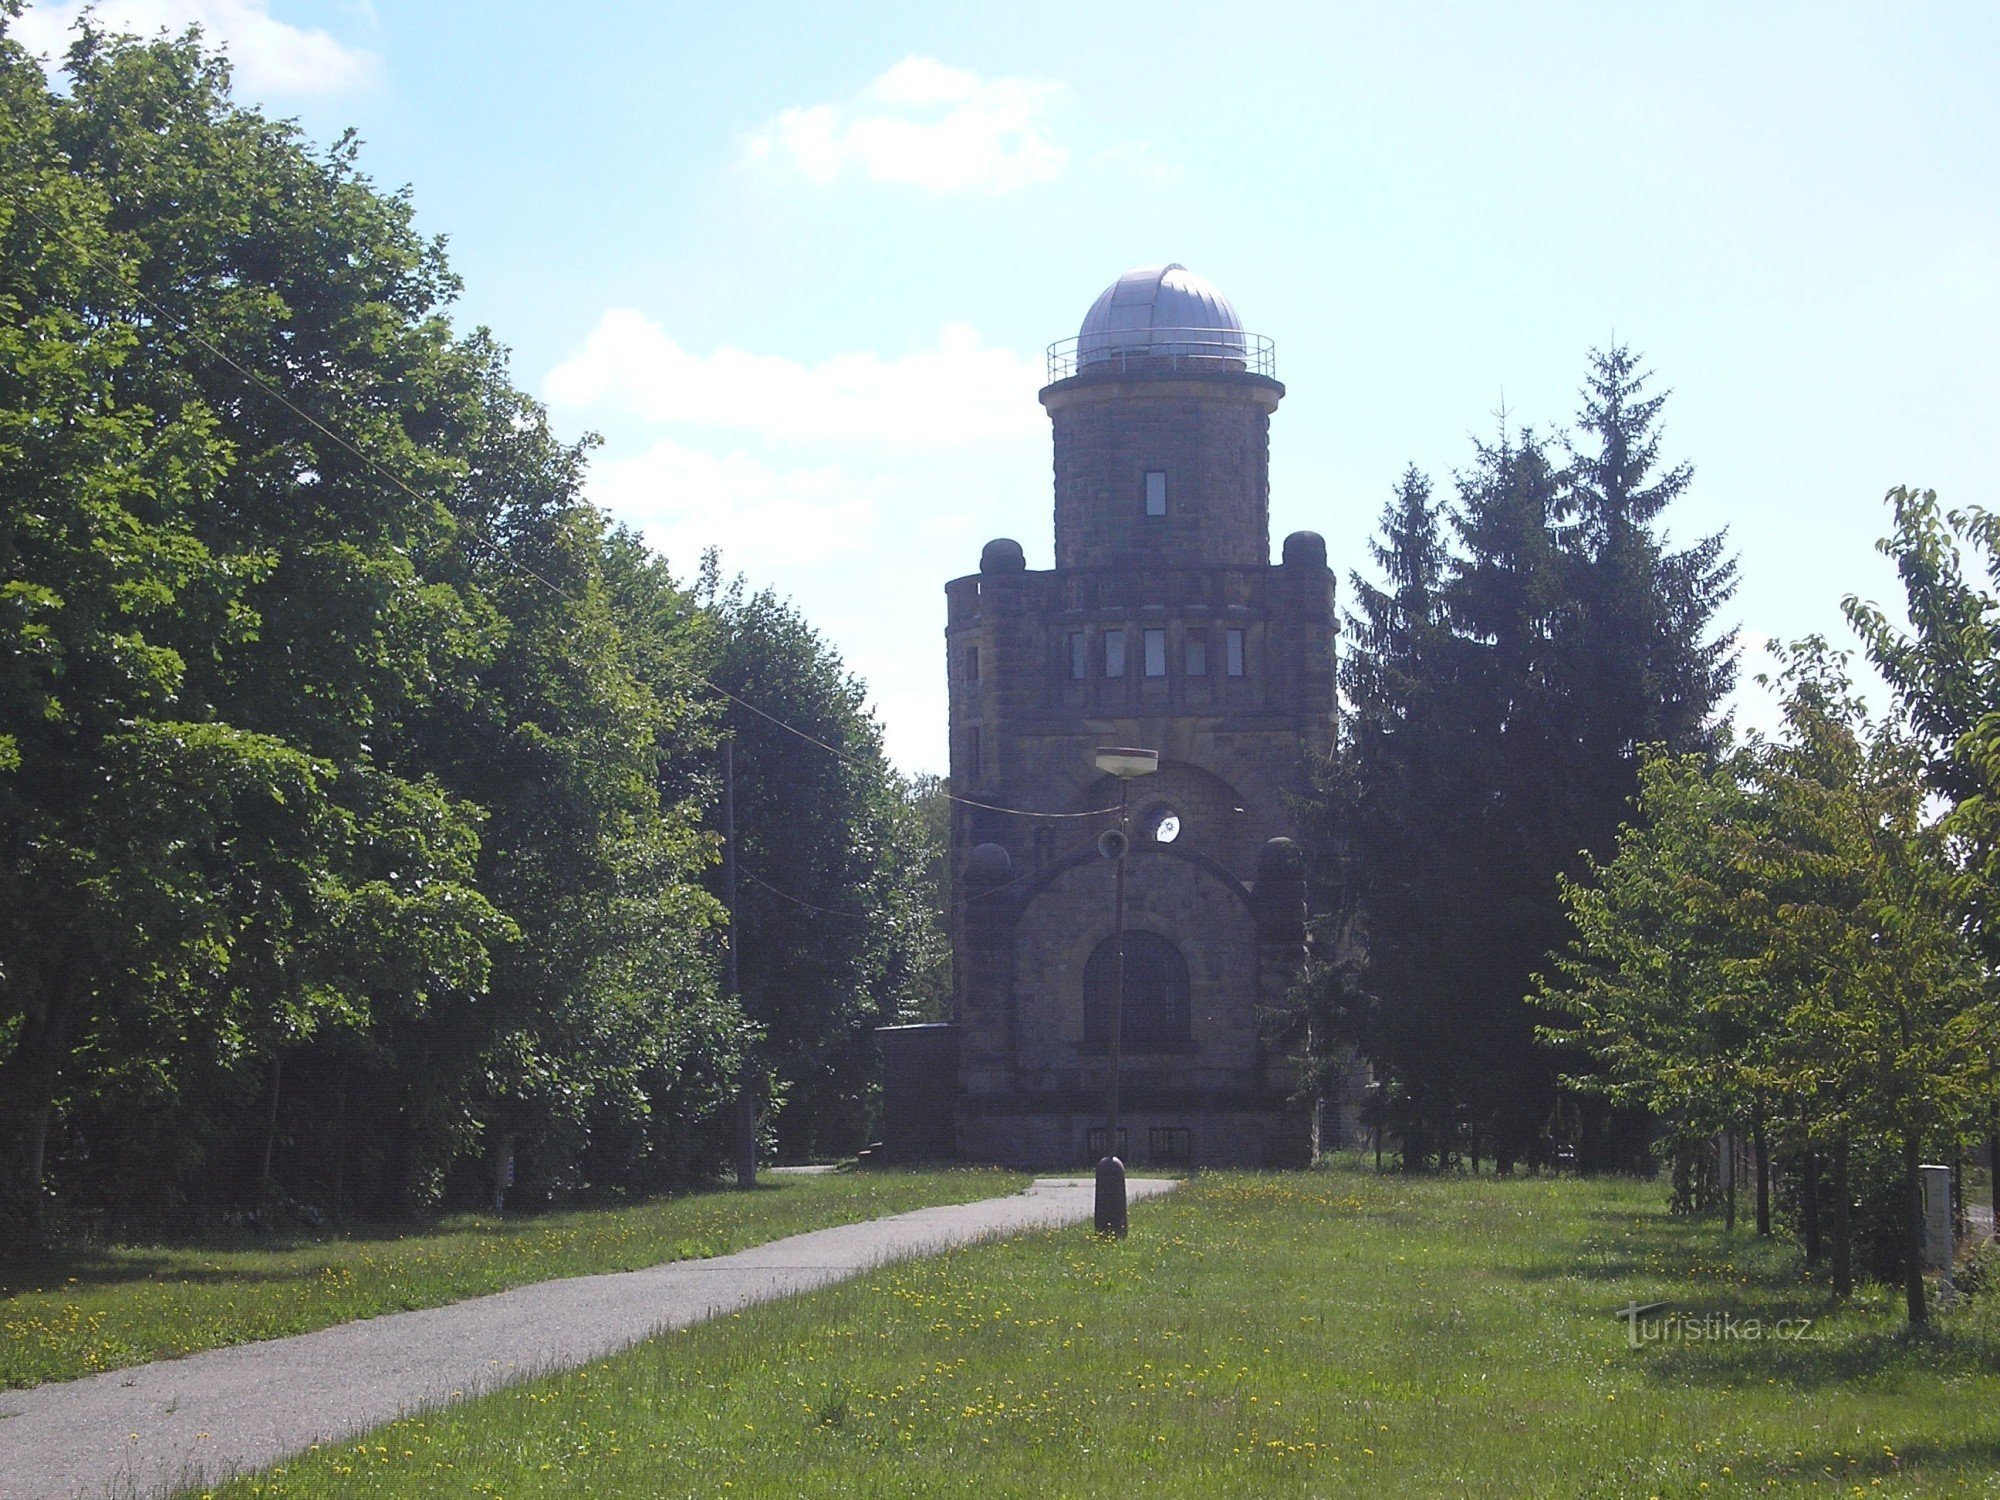 Masaryk-toren van onafhankelijkheid